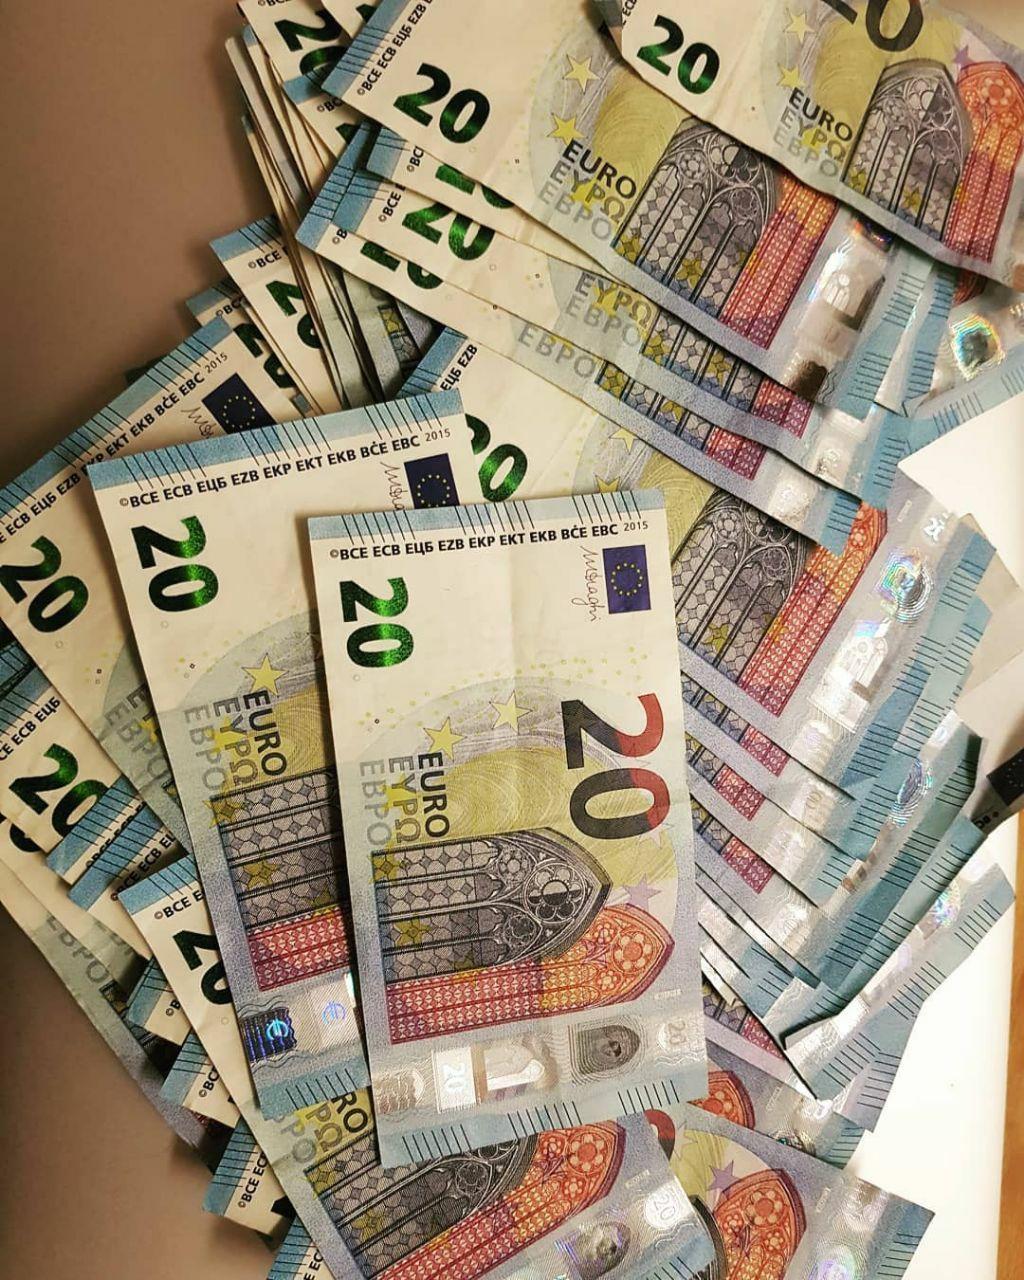 Detectan billetes falsos de 20 euros en Medina Sidonia